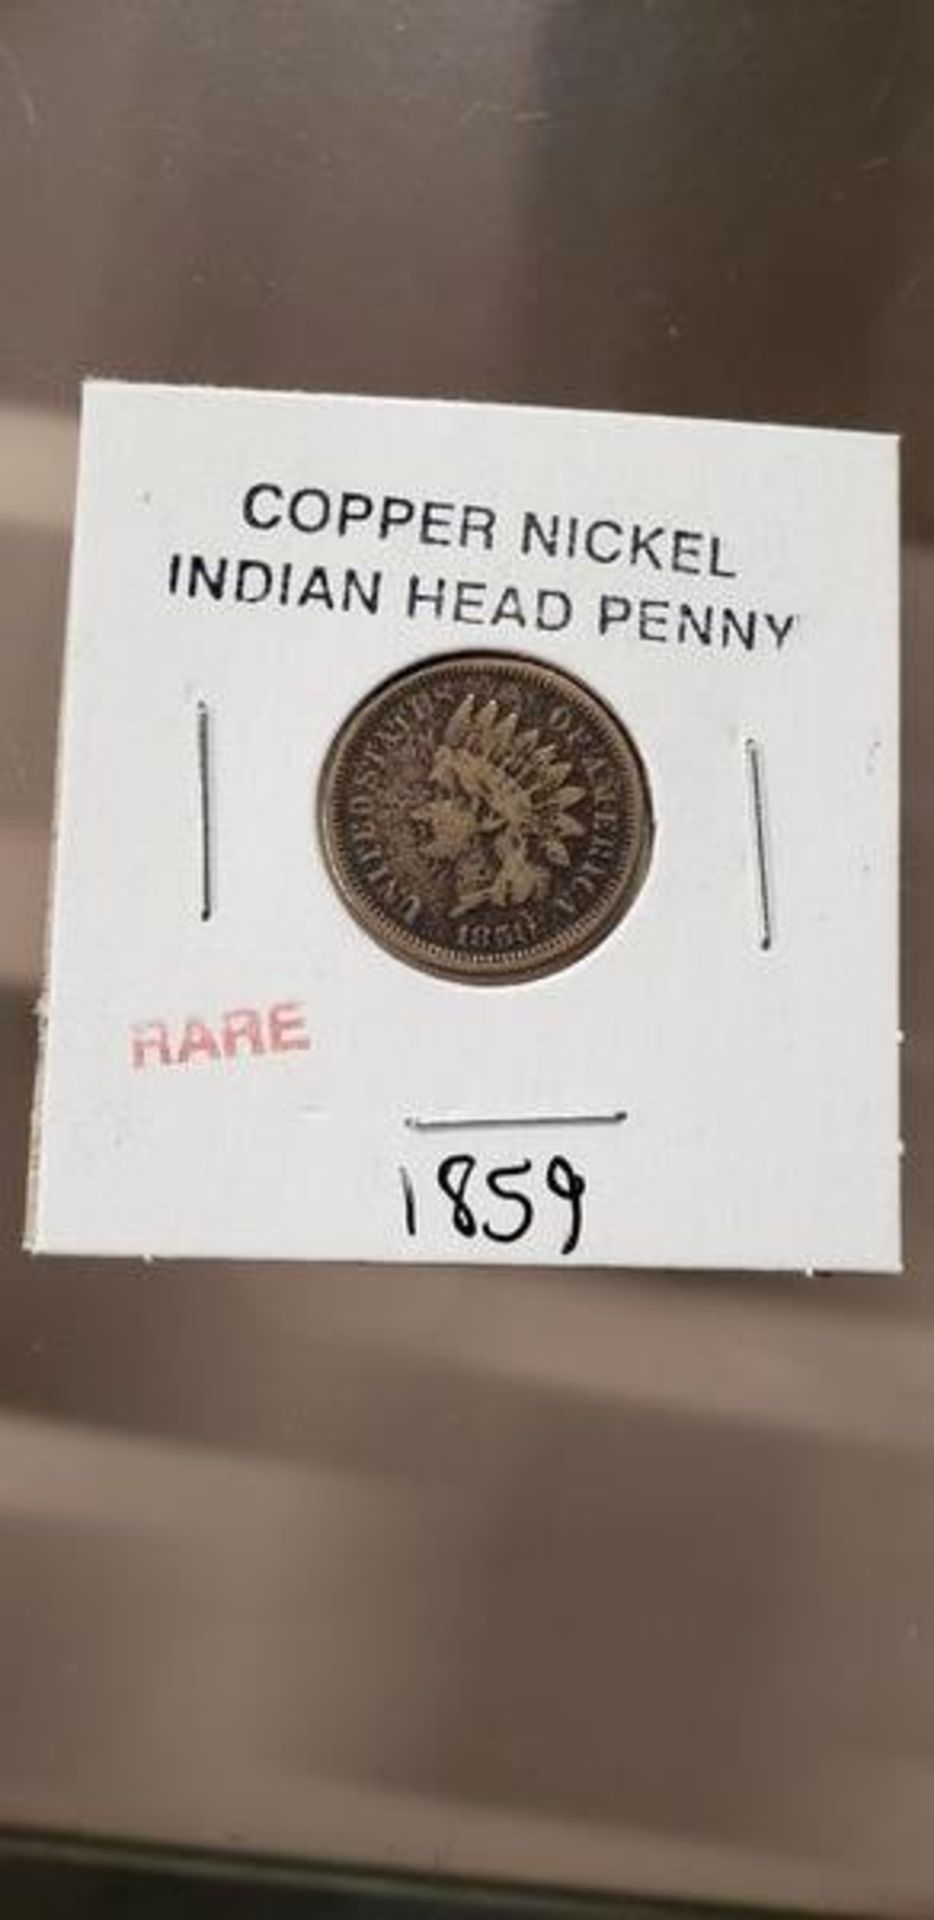 COPPER NICKEL INDIAN HEAD PENNY